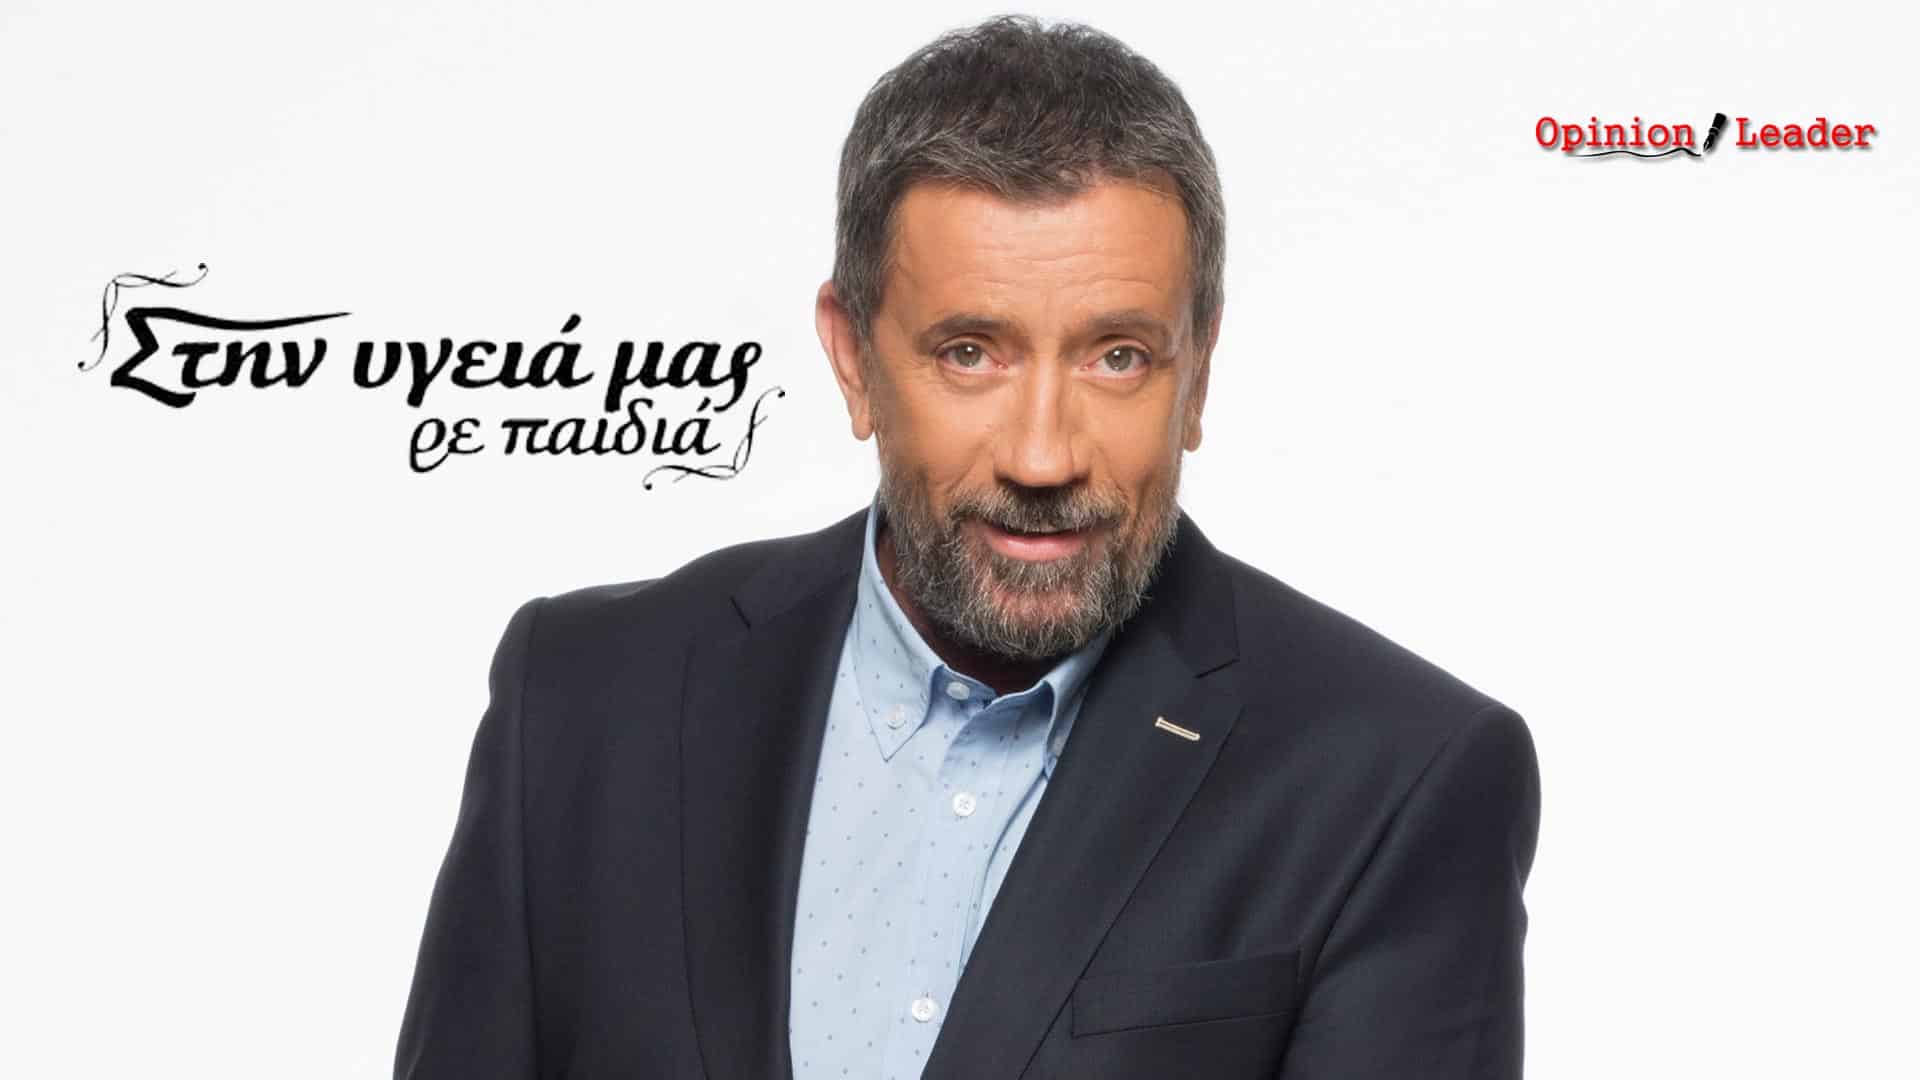 Σπύρος Παπαδόπουλος - Στην Υγειά μας ρε παιδιά